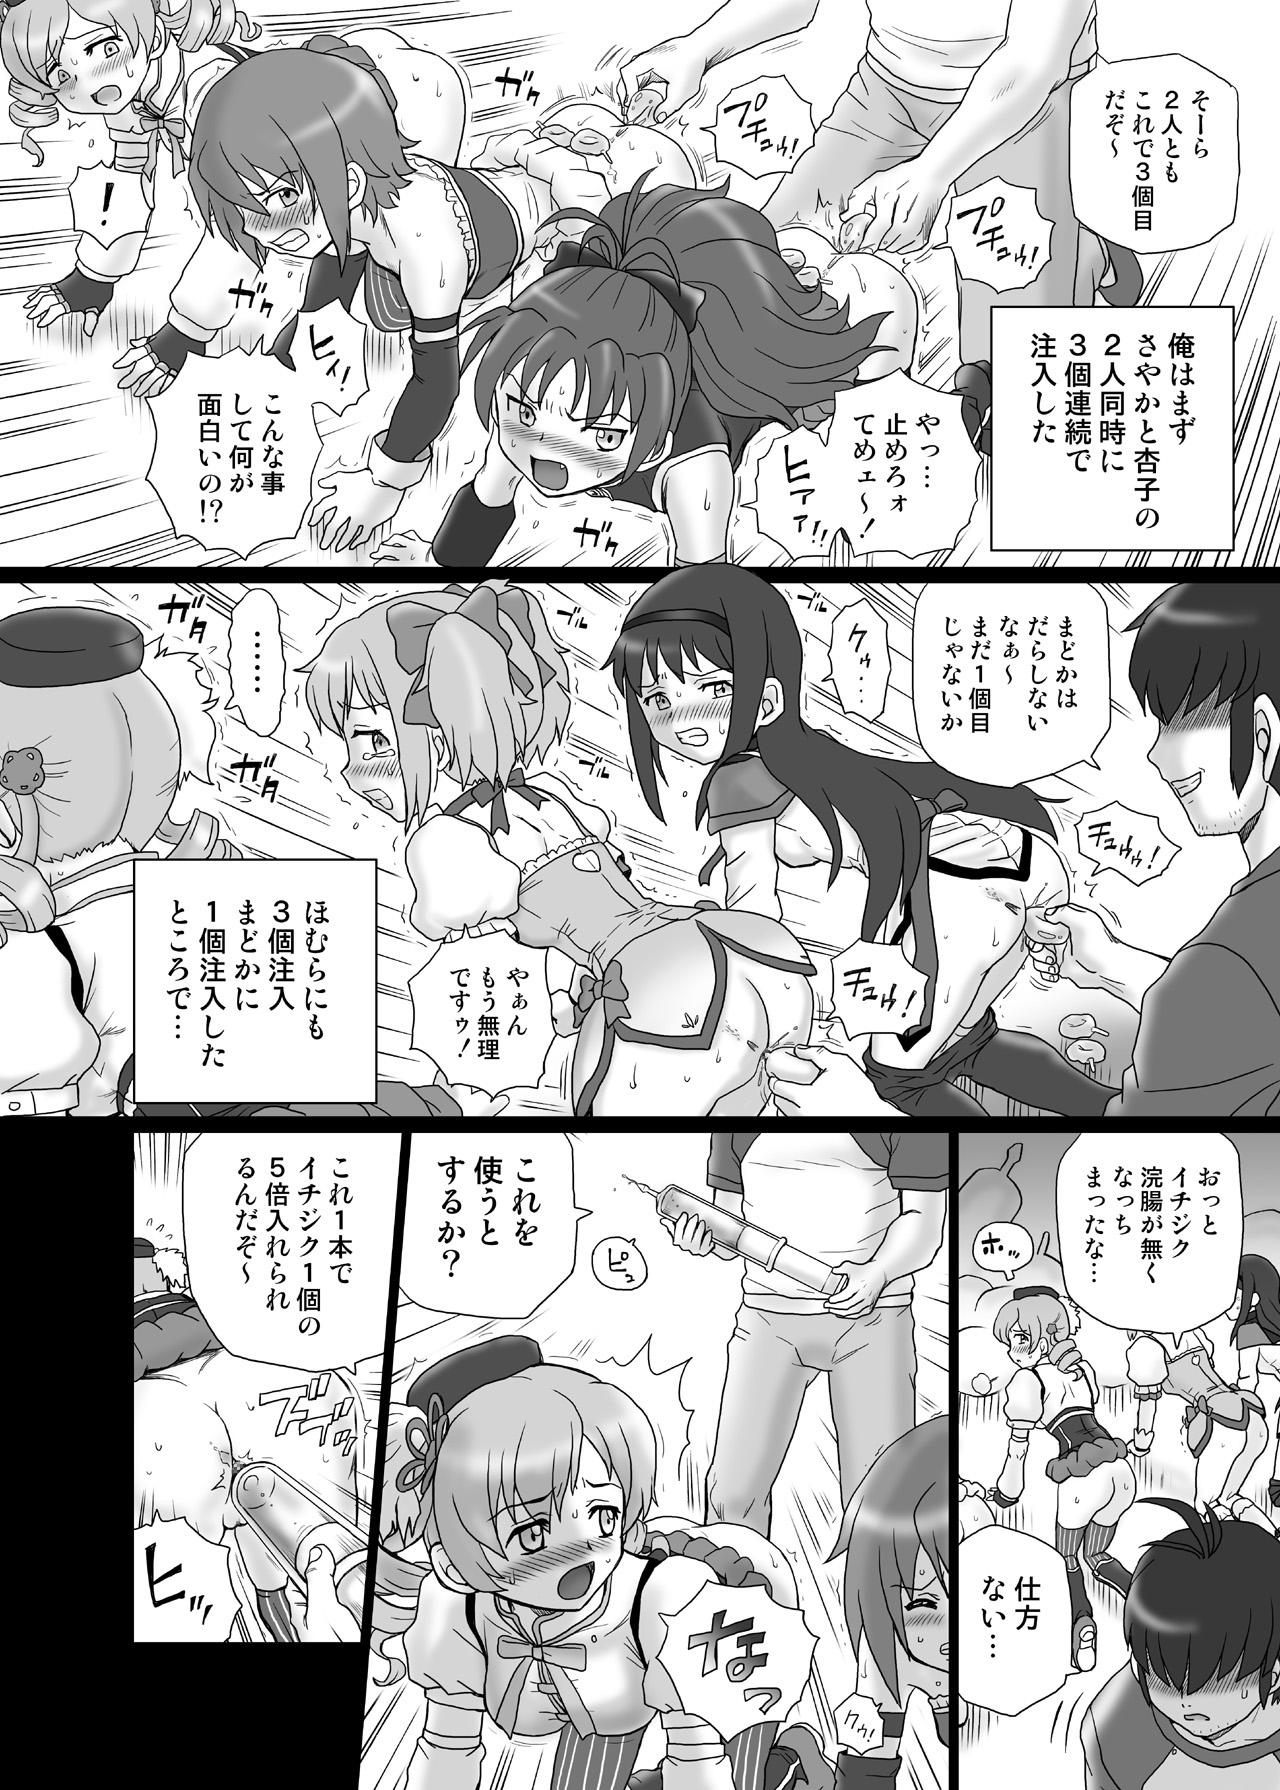 Nudity "Mado★Magi" Anal & Scatolo Sakuhinshuu - Puella magi madoka magica Step Fantasy - Page 9